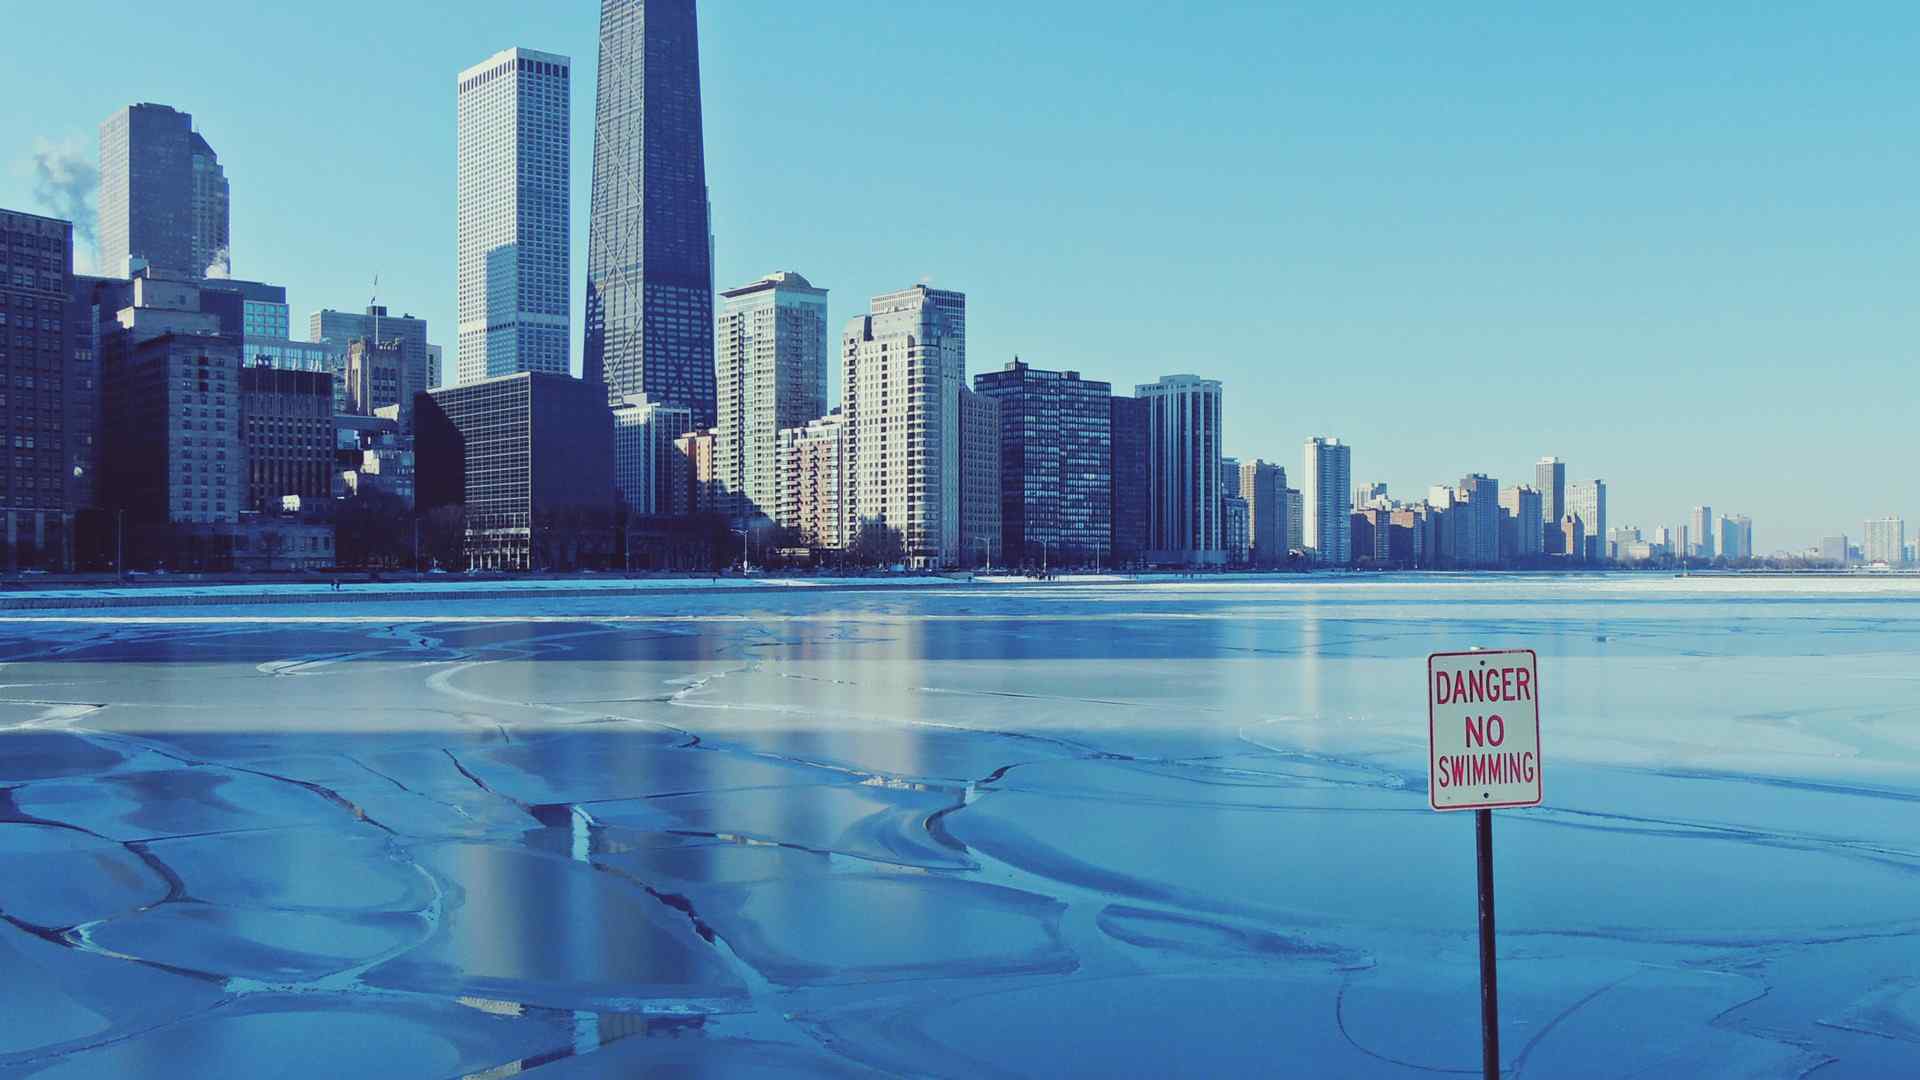 唯美芝加哥城市风景桌面壁纸 第一辑